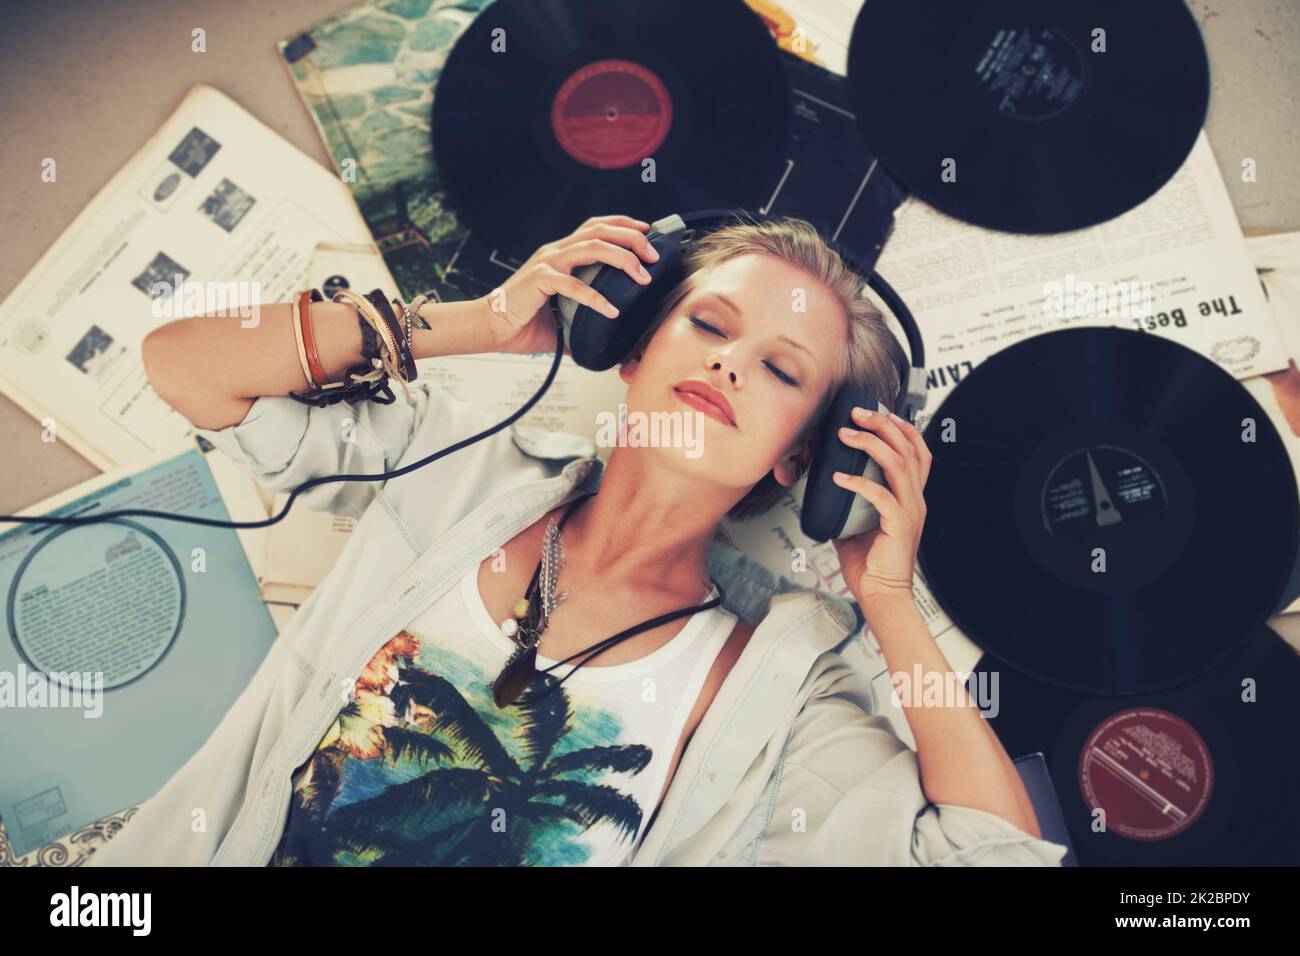 Mantieni la calma e lascia che la musica si riproduda. Una giovane donna che ascolta musica mentre si trova sulla schiena e circondata da dischi. Foto Stock